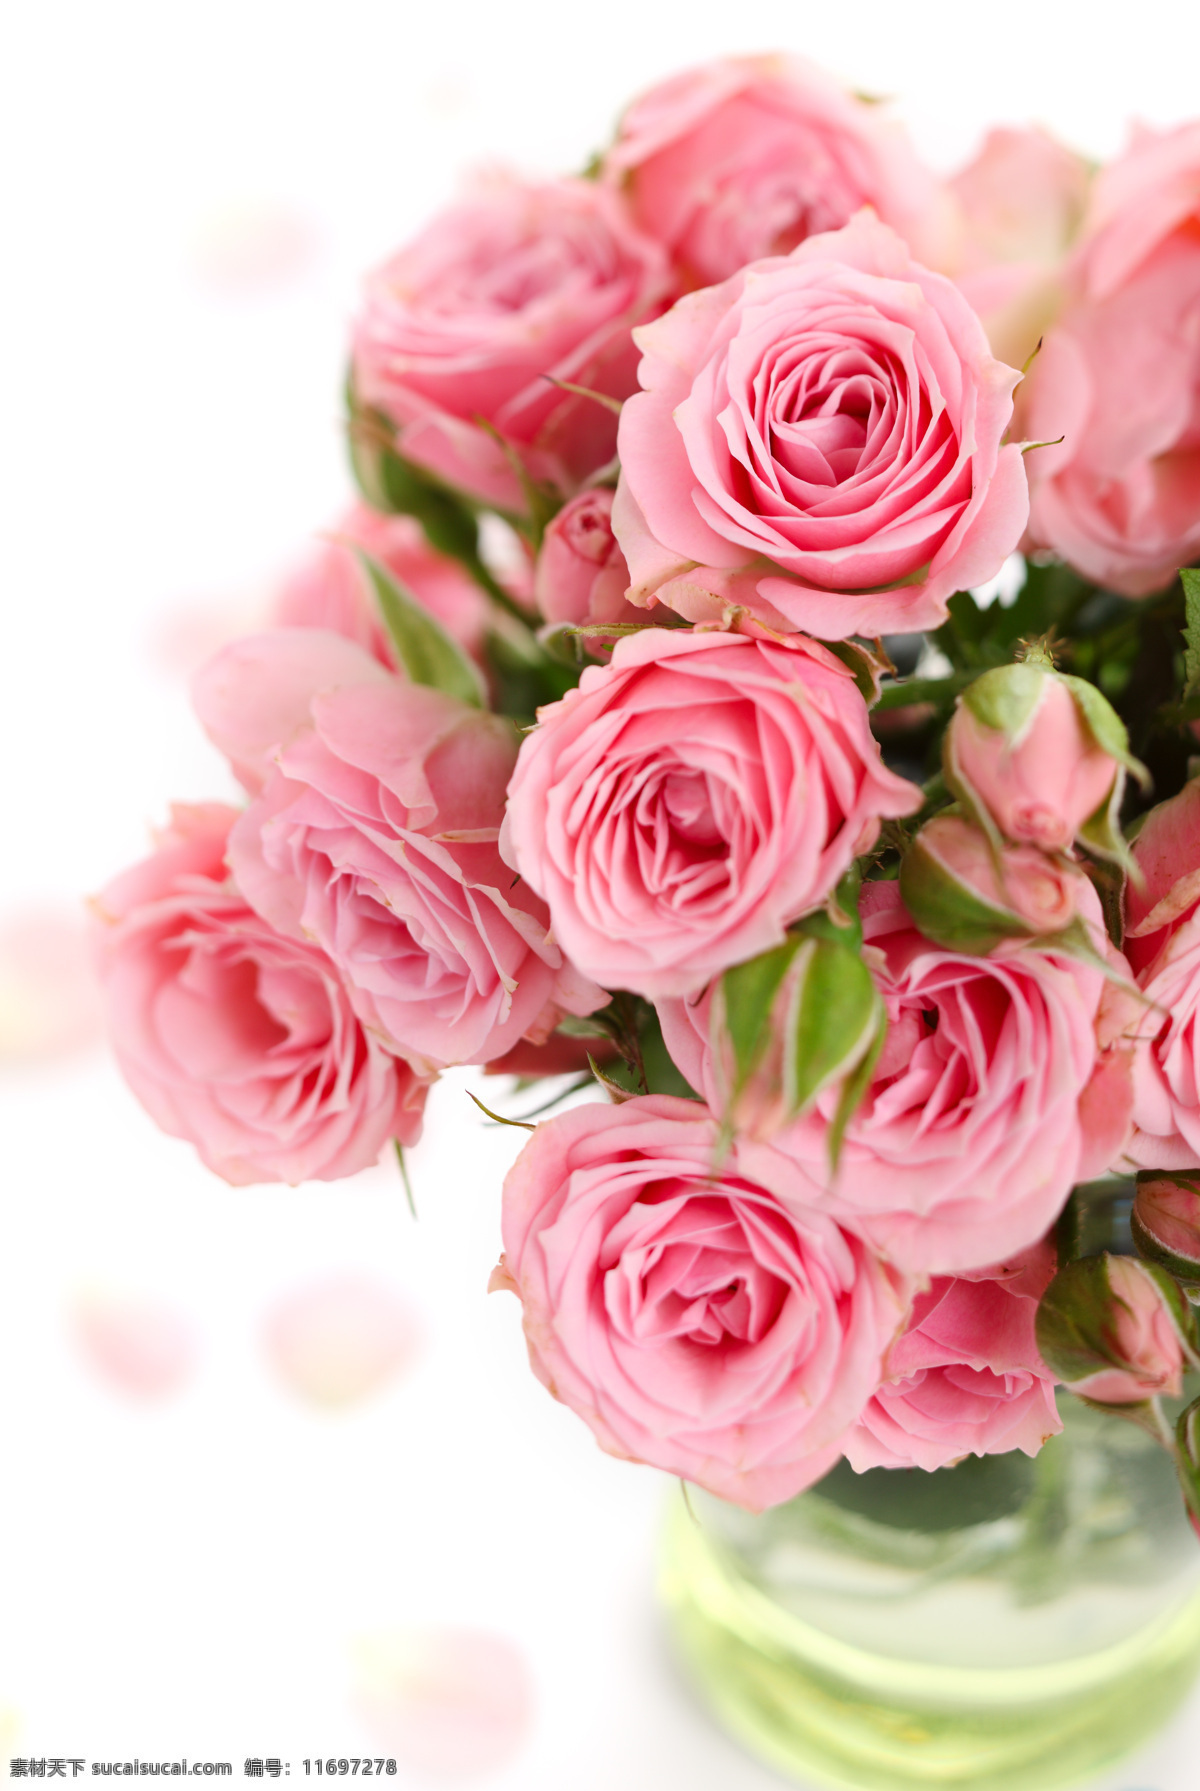 花瓶 中 粉色 玫瑰 鲜花 花束 植物 花草主题 花草 生物世界